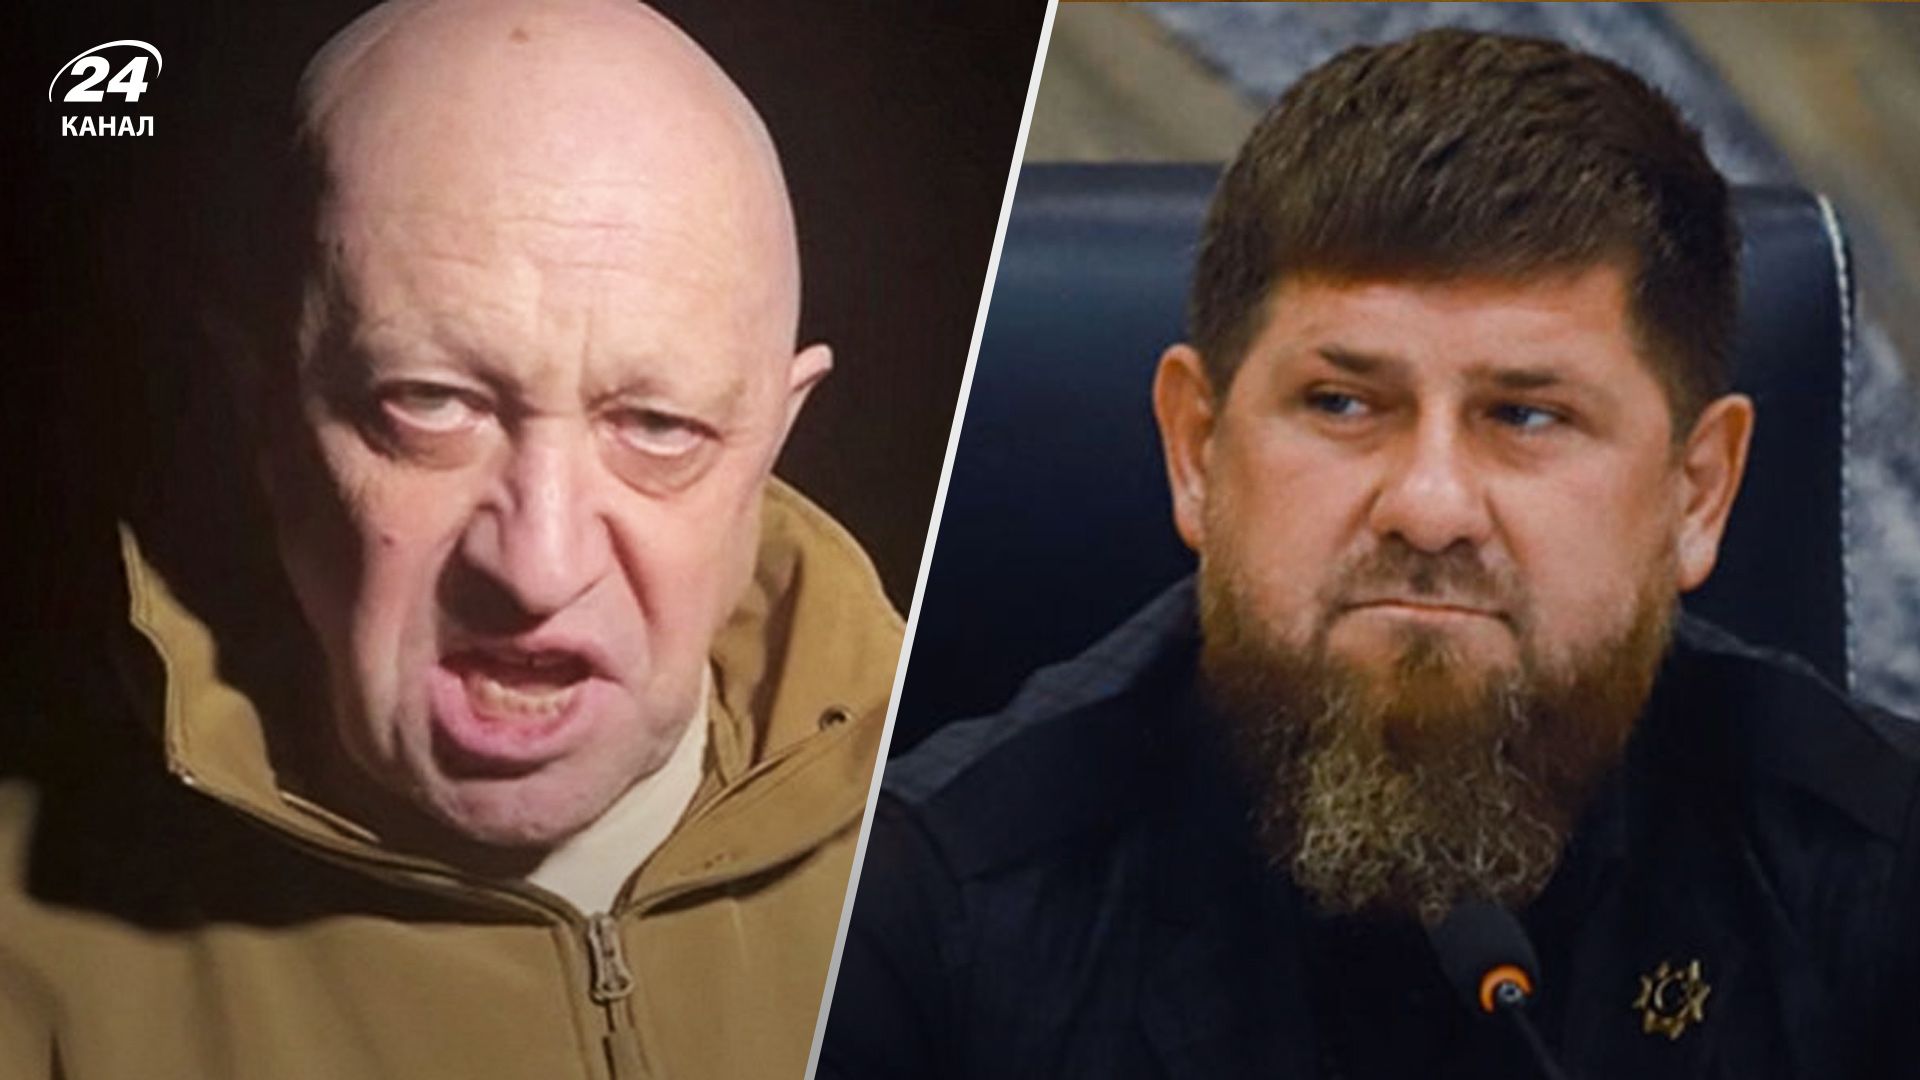 Неожиданная причина: почему возник такой серьезный конфликт между Пригожиным и Кадыровым - 24 Канал